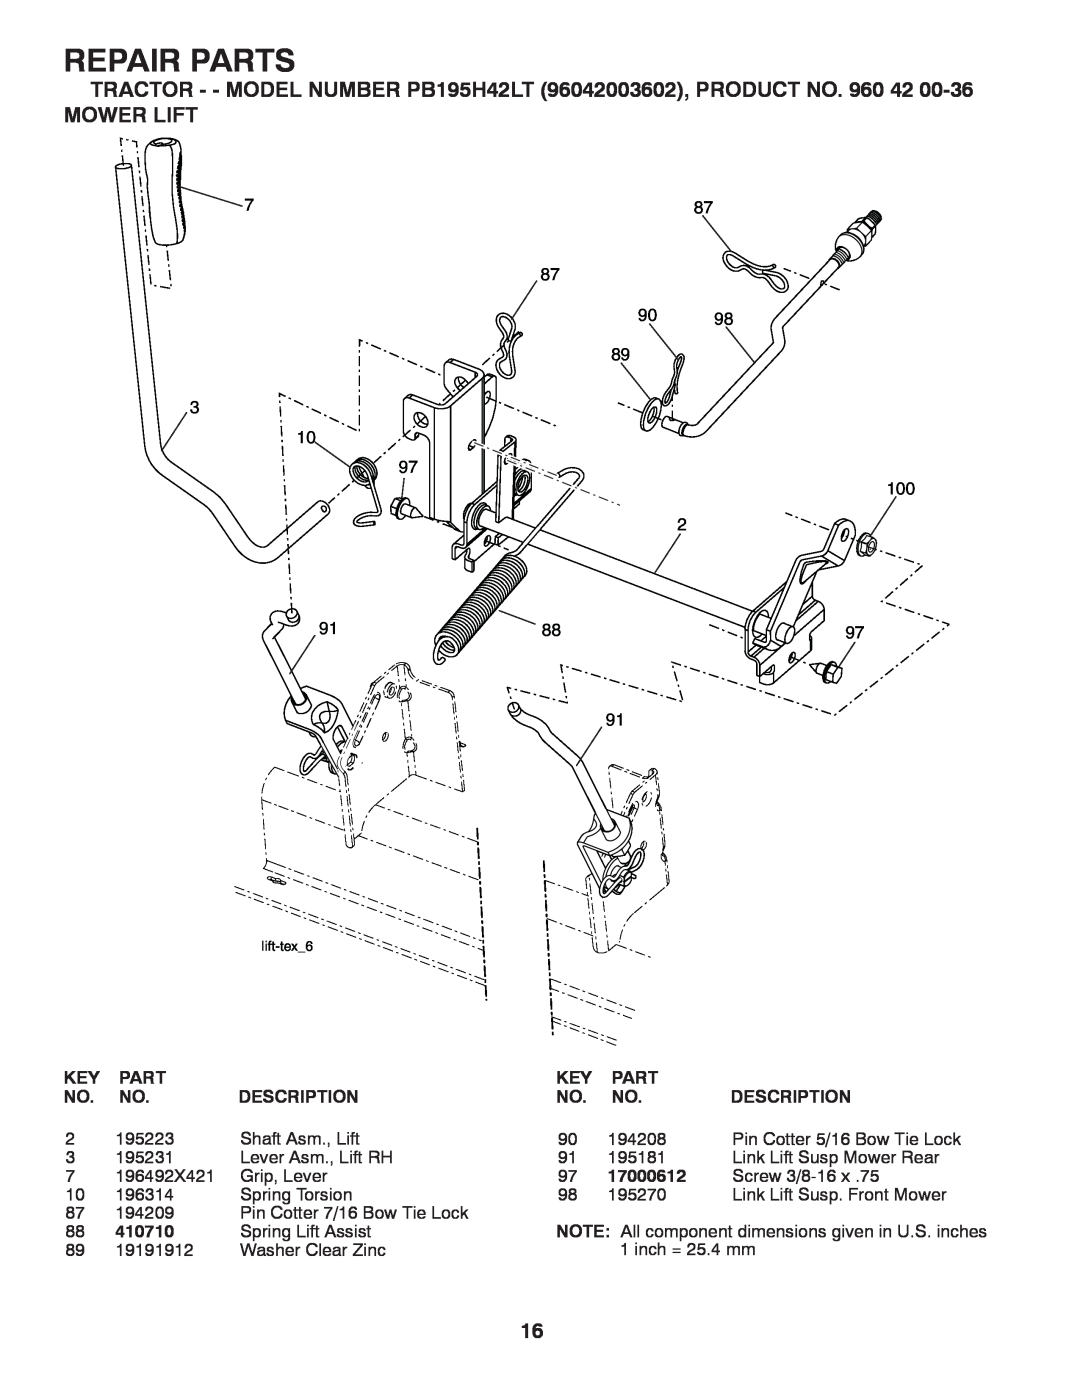 Poulan 96042003602 manual Mower Lift, Repair Parts, 87 90 89 3 10 97 100 2, Description, 17000612, 410710 